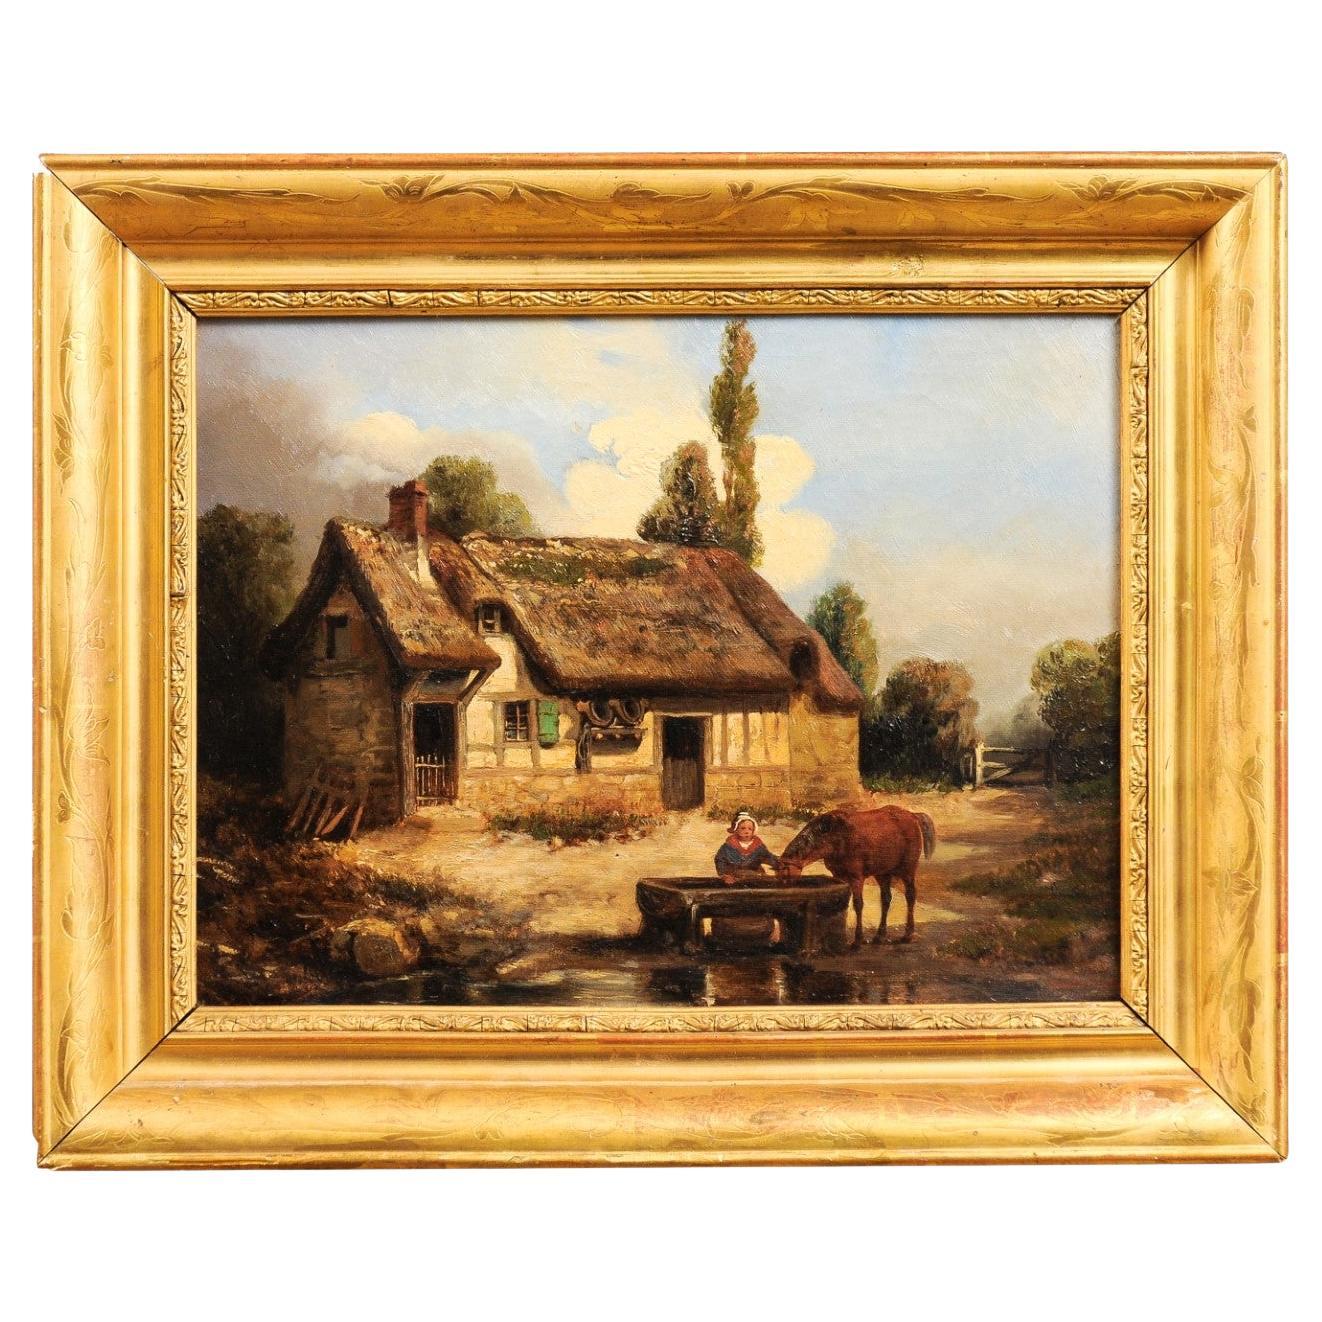 Peinture française du 19e siècle signée Léon Bertan représentant une scène de ferme bucolique